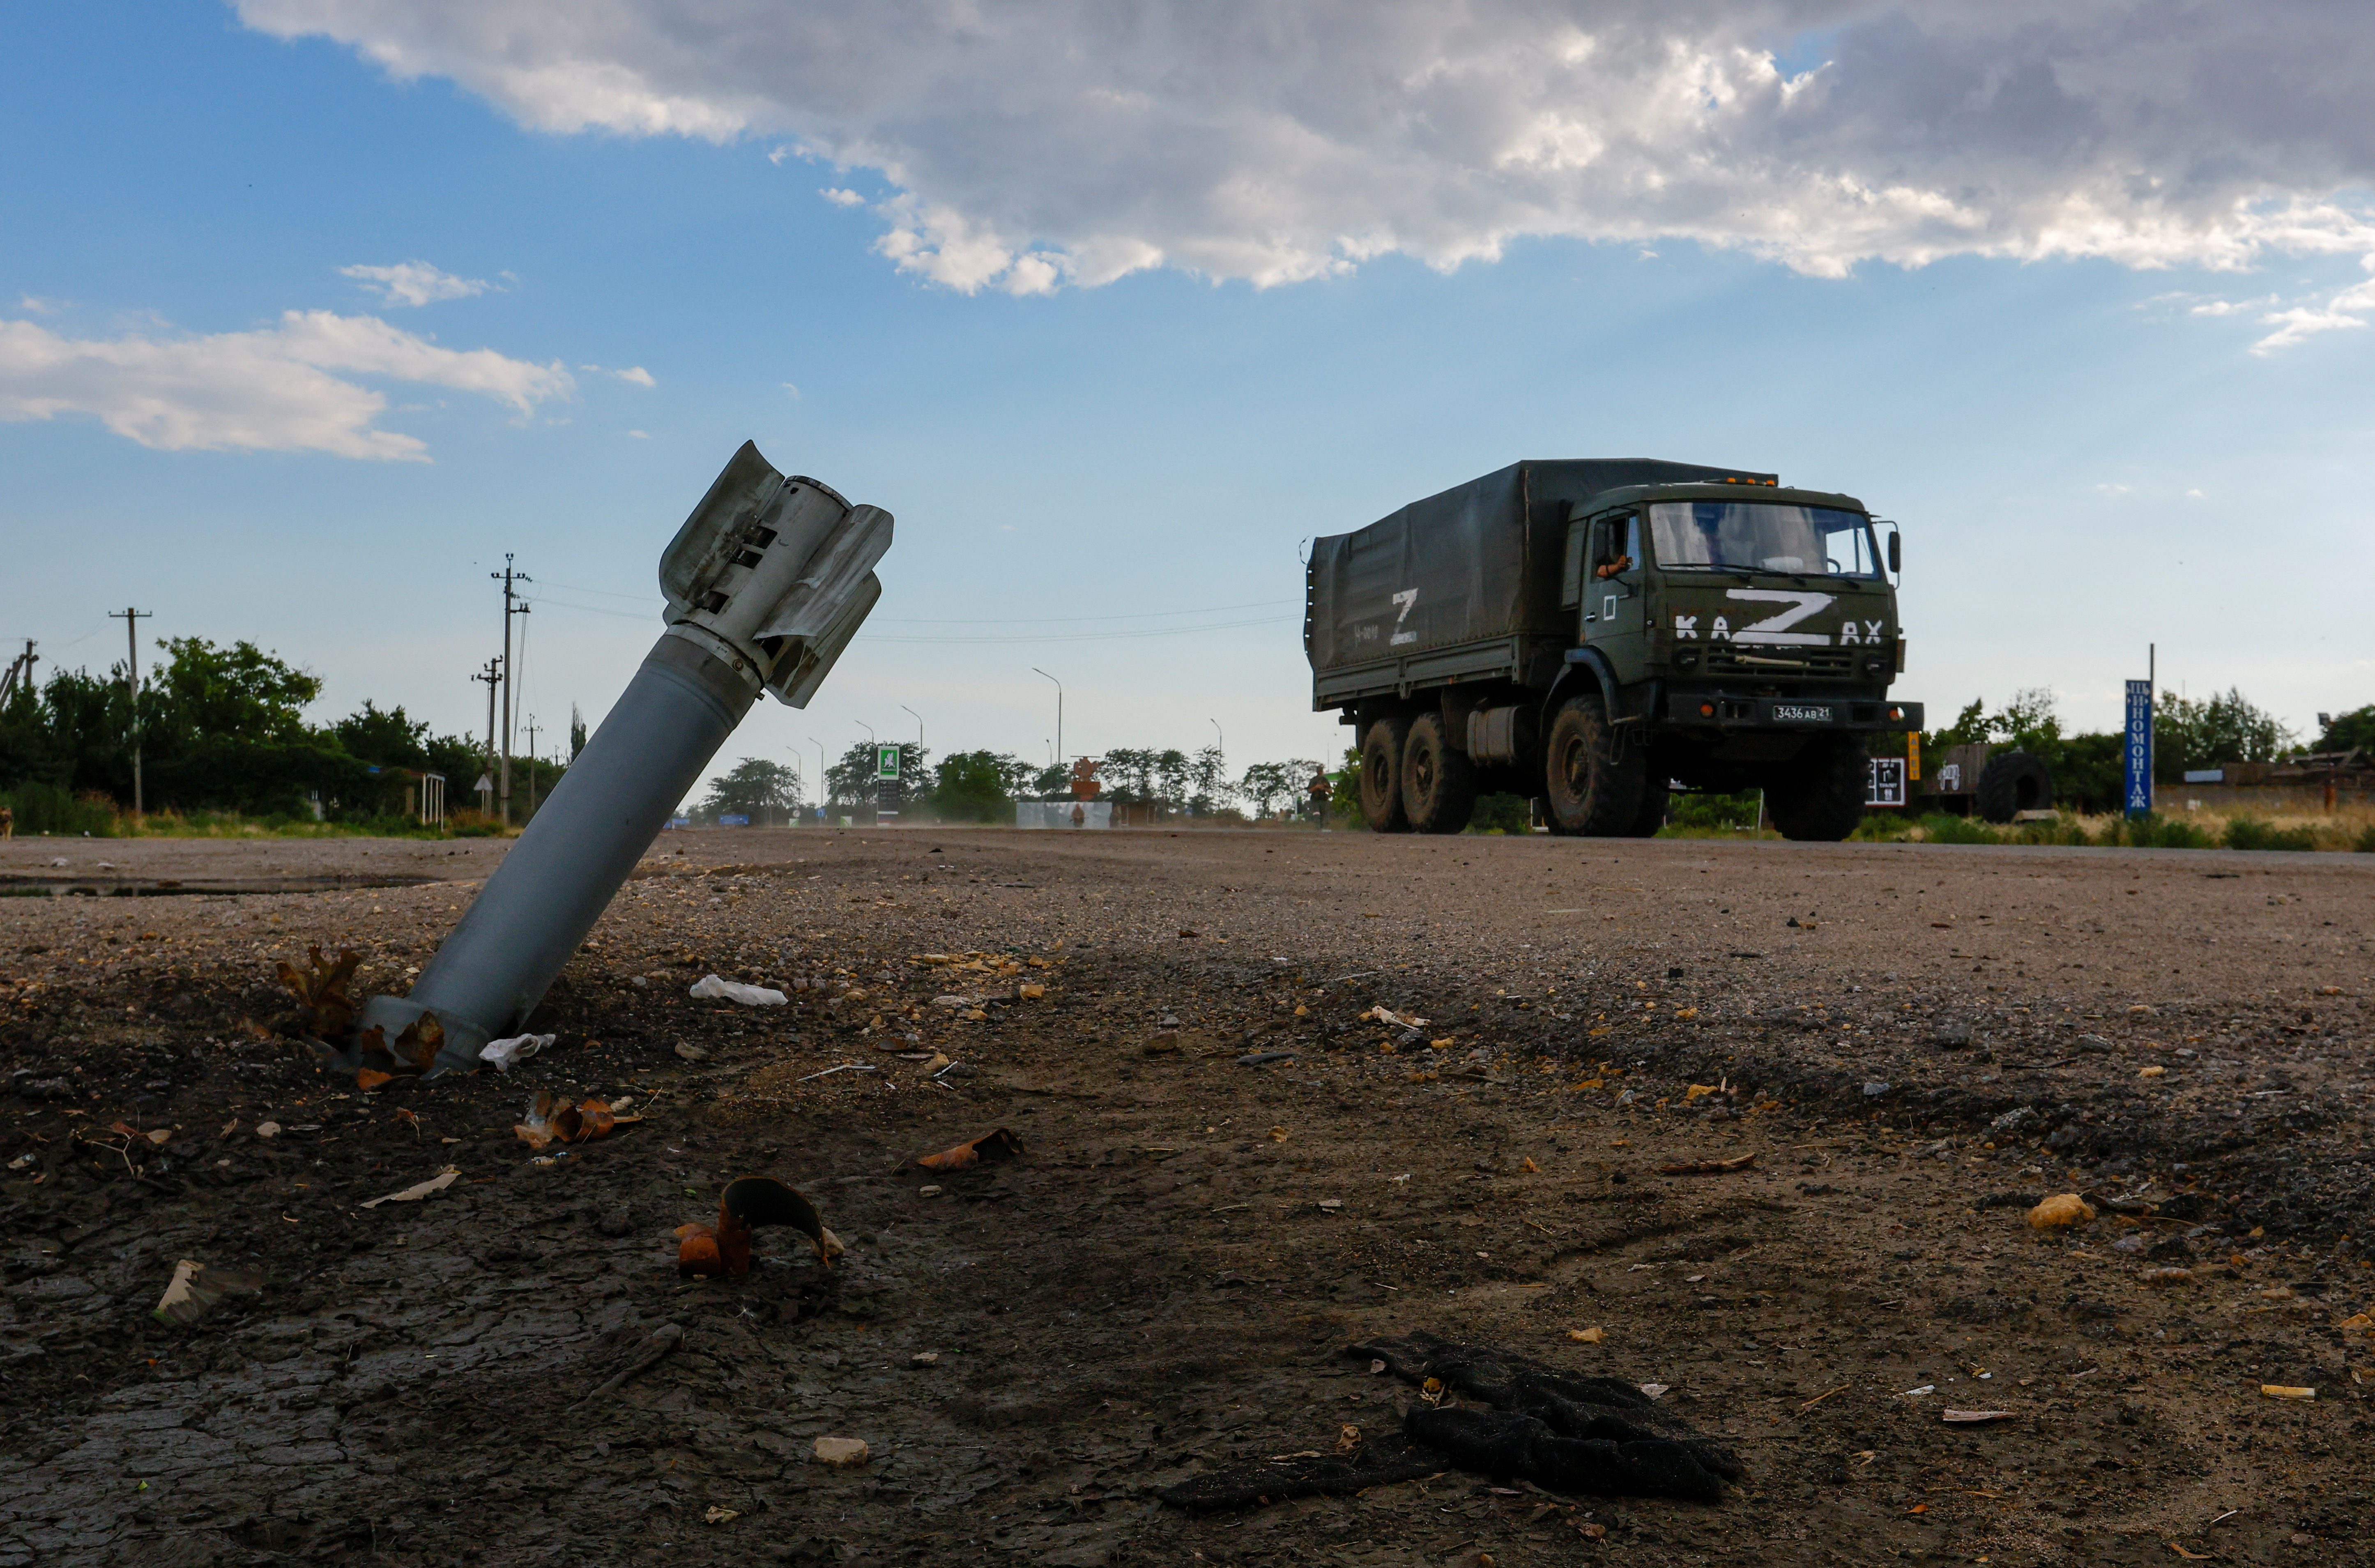 Un camión militar ruso pasa junto a una munición sin explotar durante el conflicto Ucrania-Rusia en la aldea de Chornobaivka, Ucrania, controlada por Rusia, el 26 de julio de 2022 (Foto: REUTERS/Alexander Ermochenko)